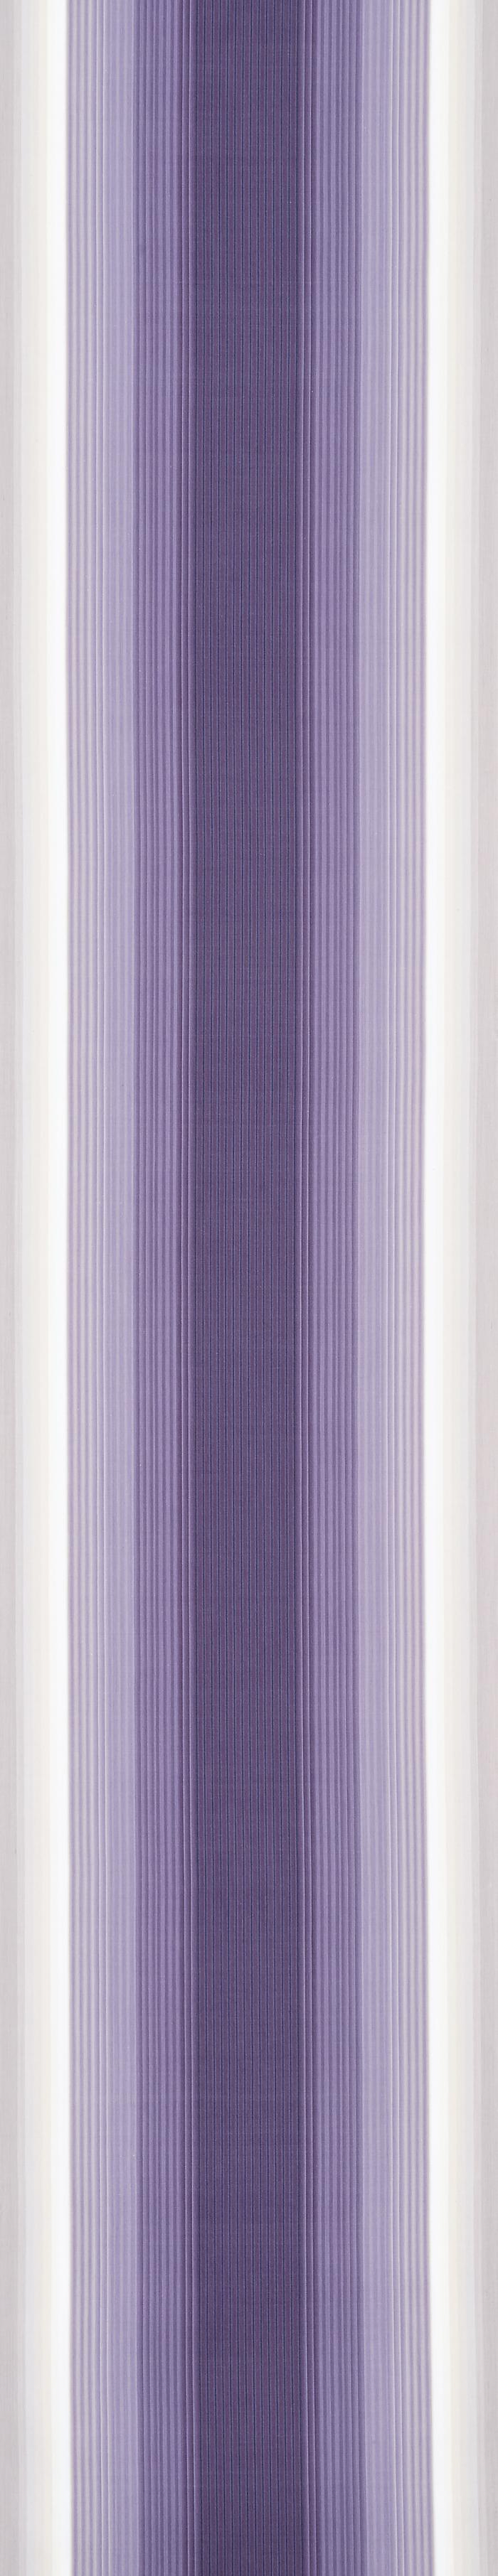 小倉縞木綿帯「飛天紫」